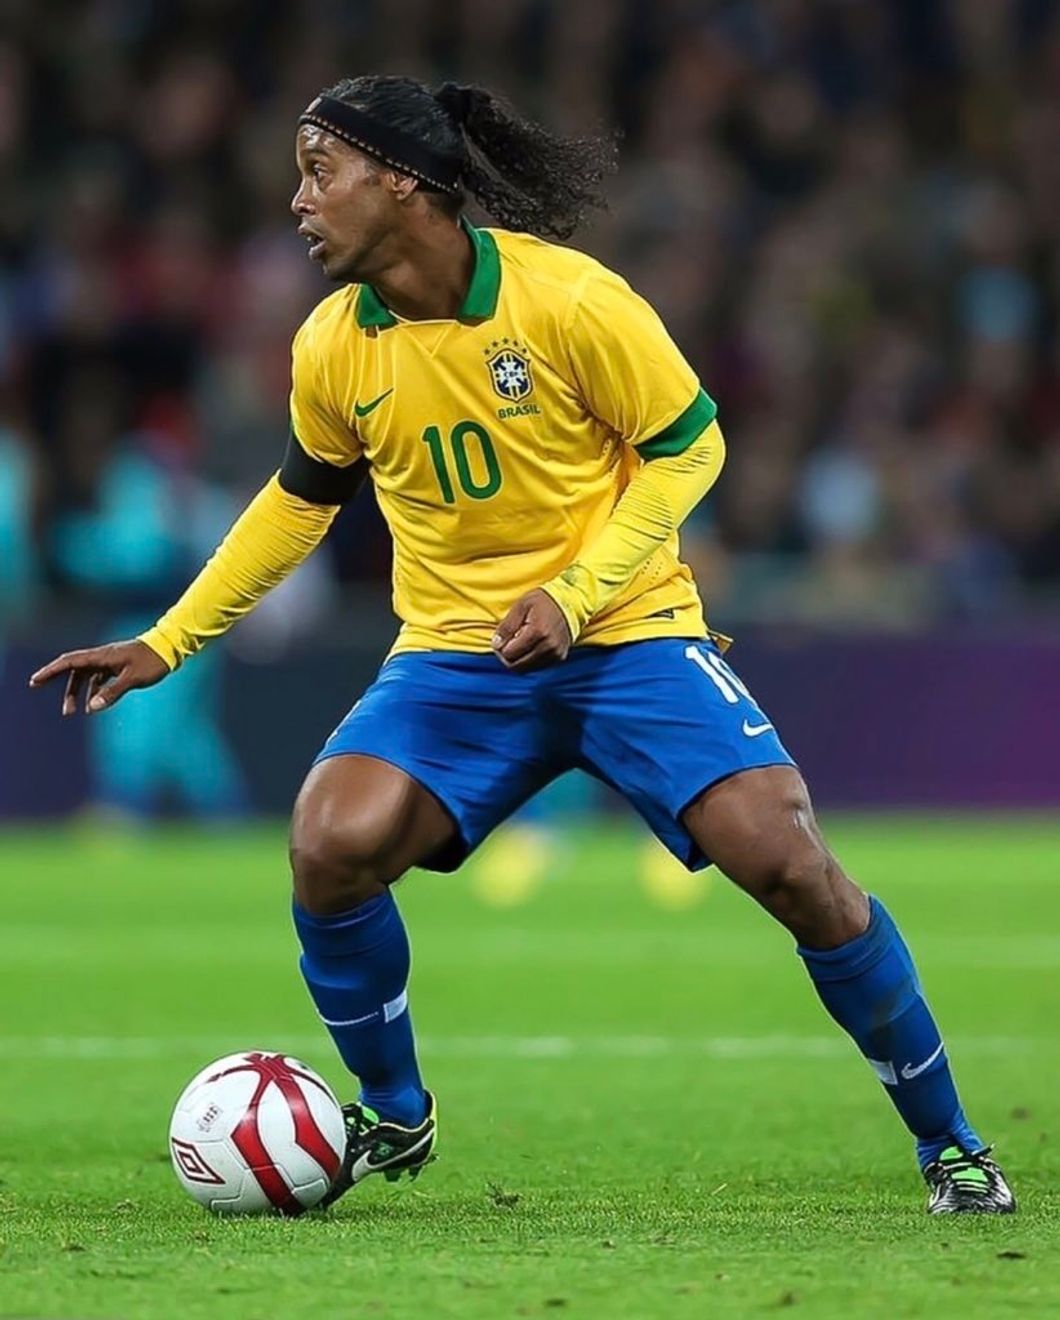 Ronaldinho: A Gift From The Soccer Gods